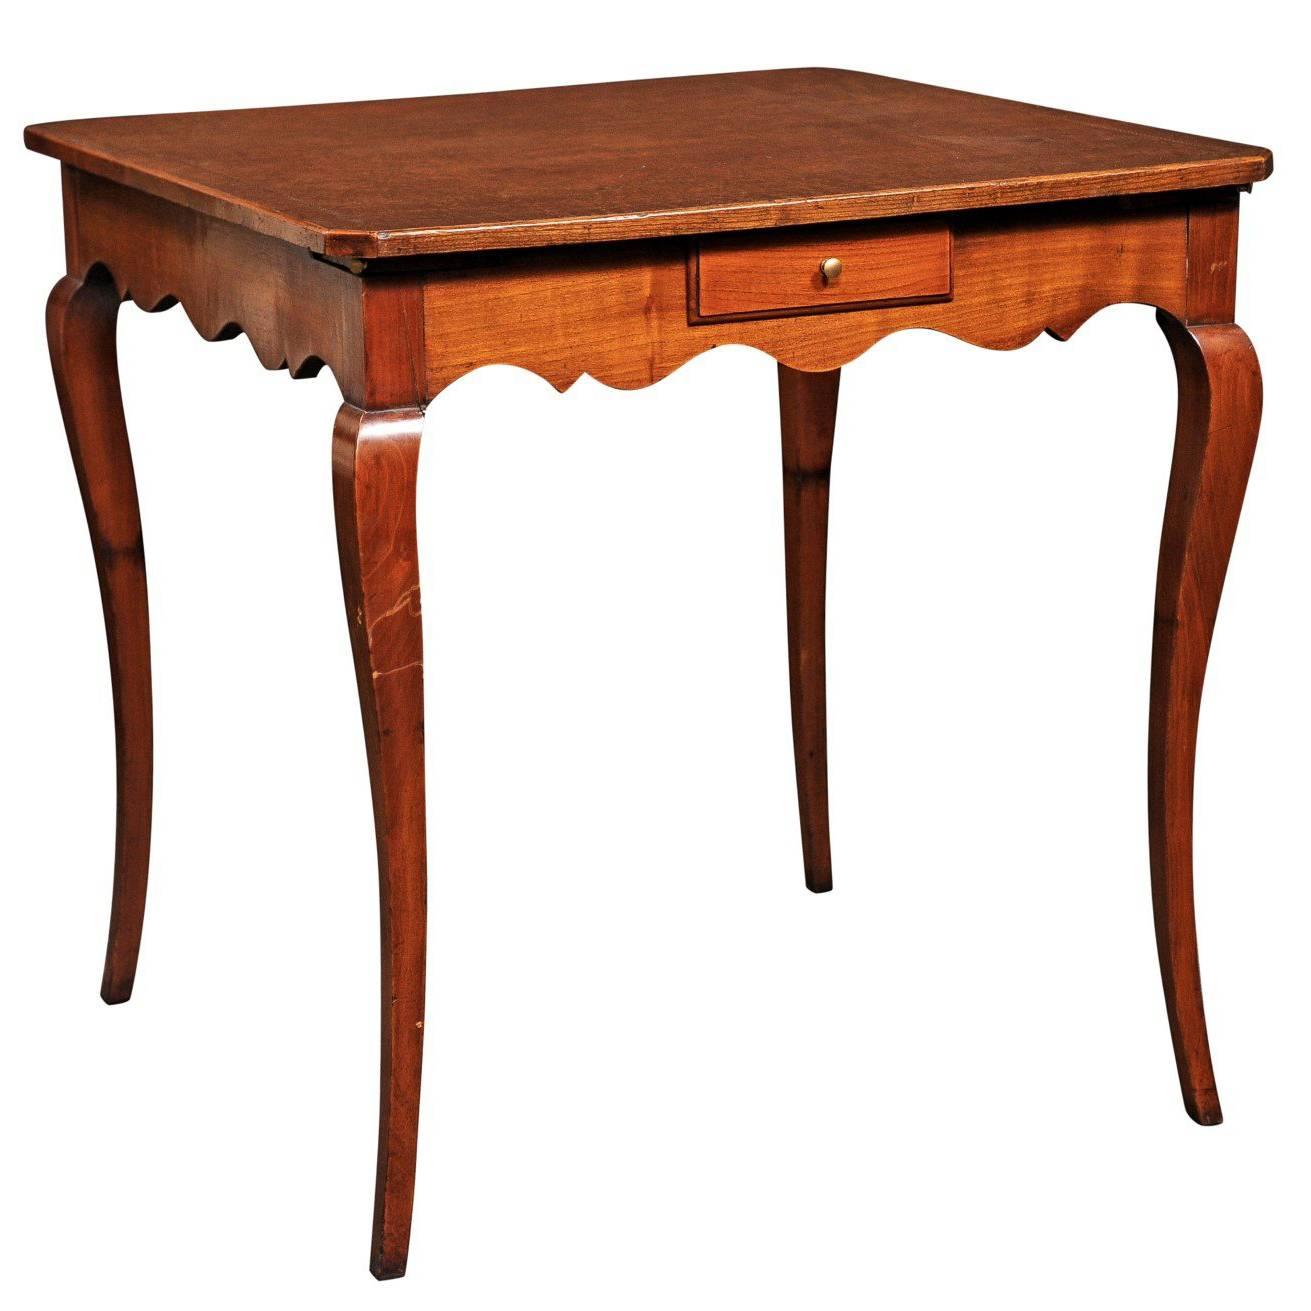 Table à jeux de style Louis XV avec plateau en cuir toilé Brown et tirettes